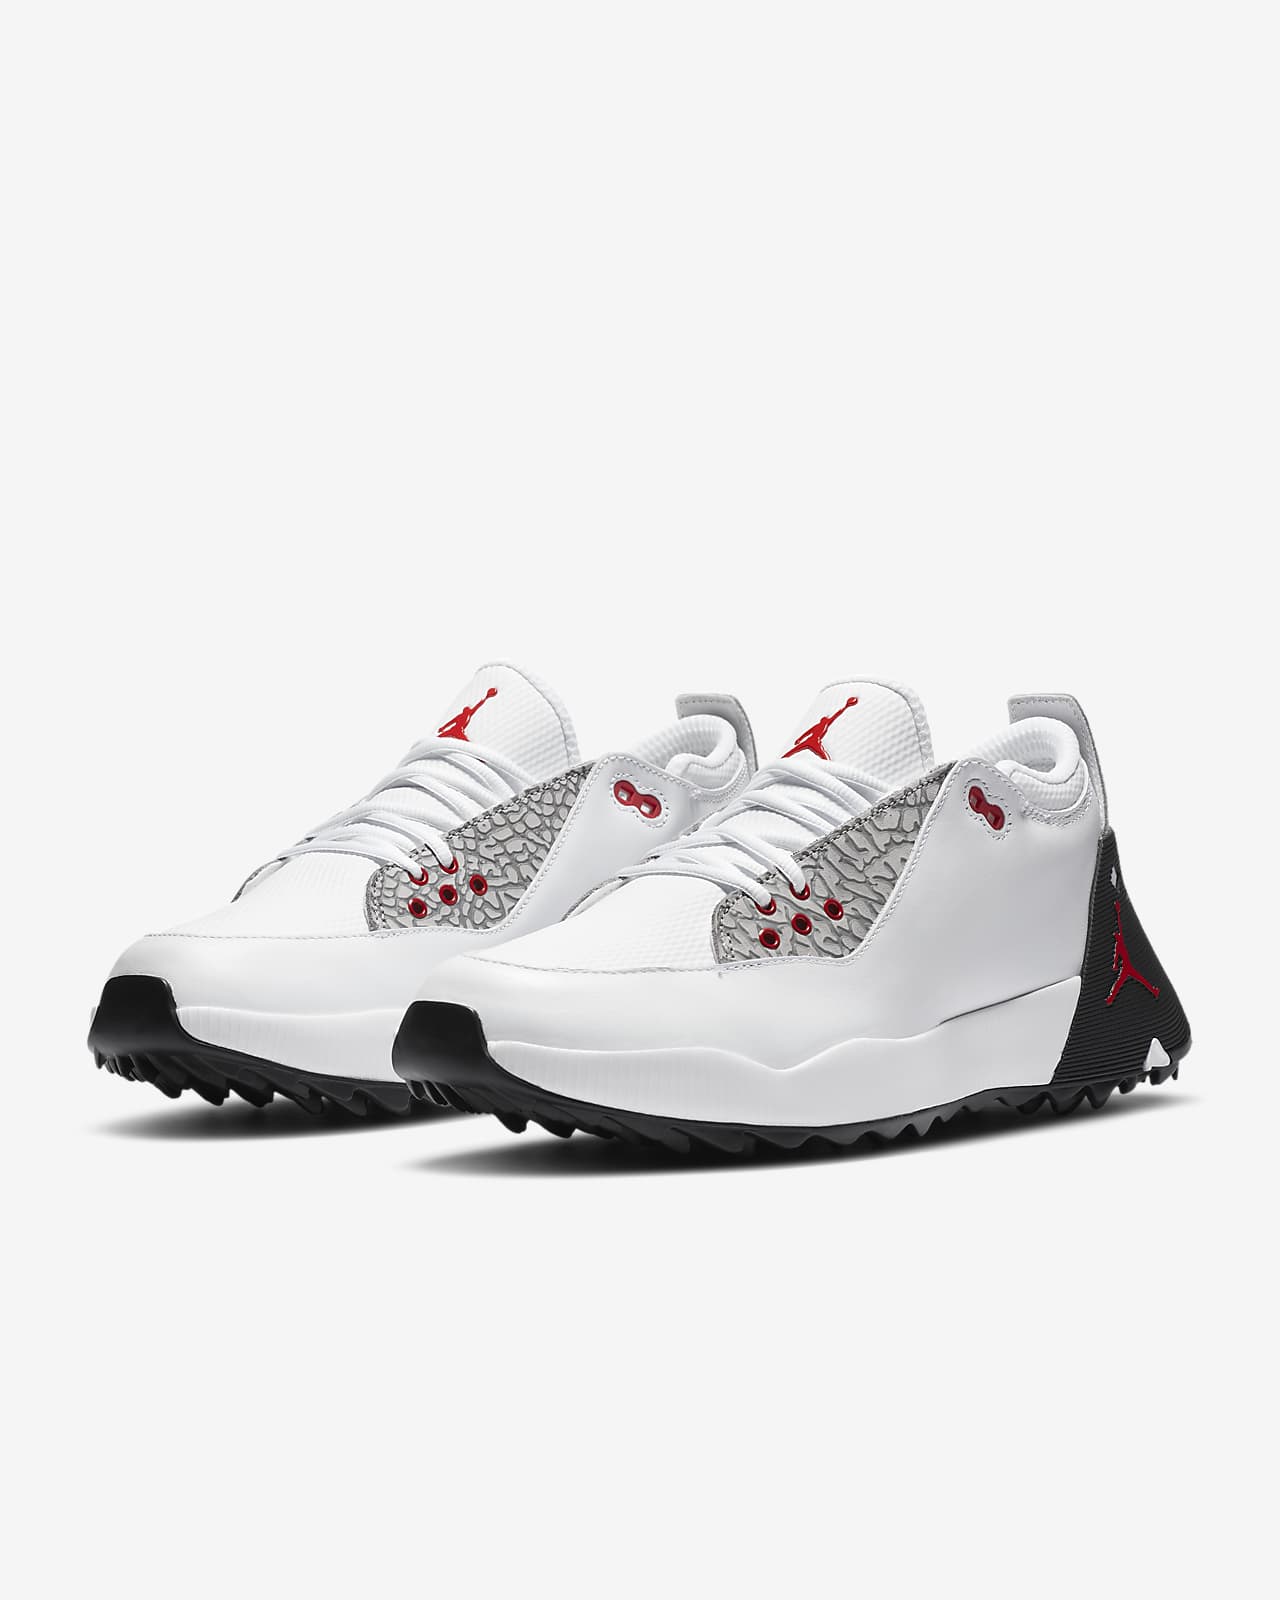 white jordan golf shoes